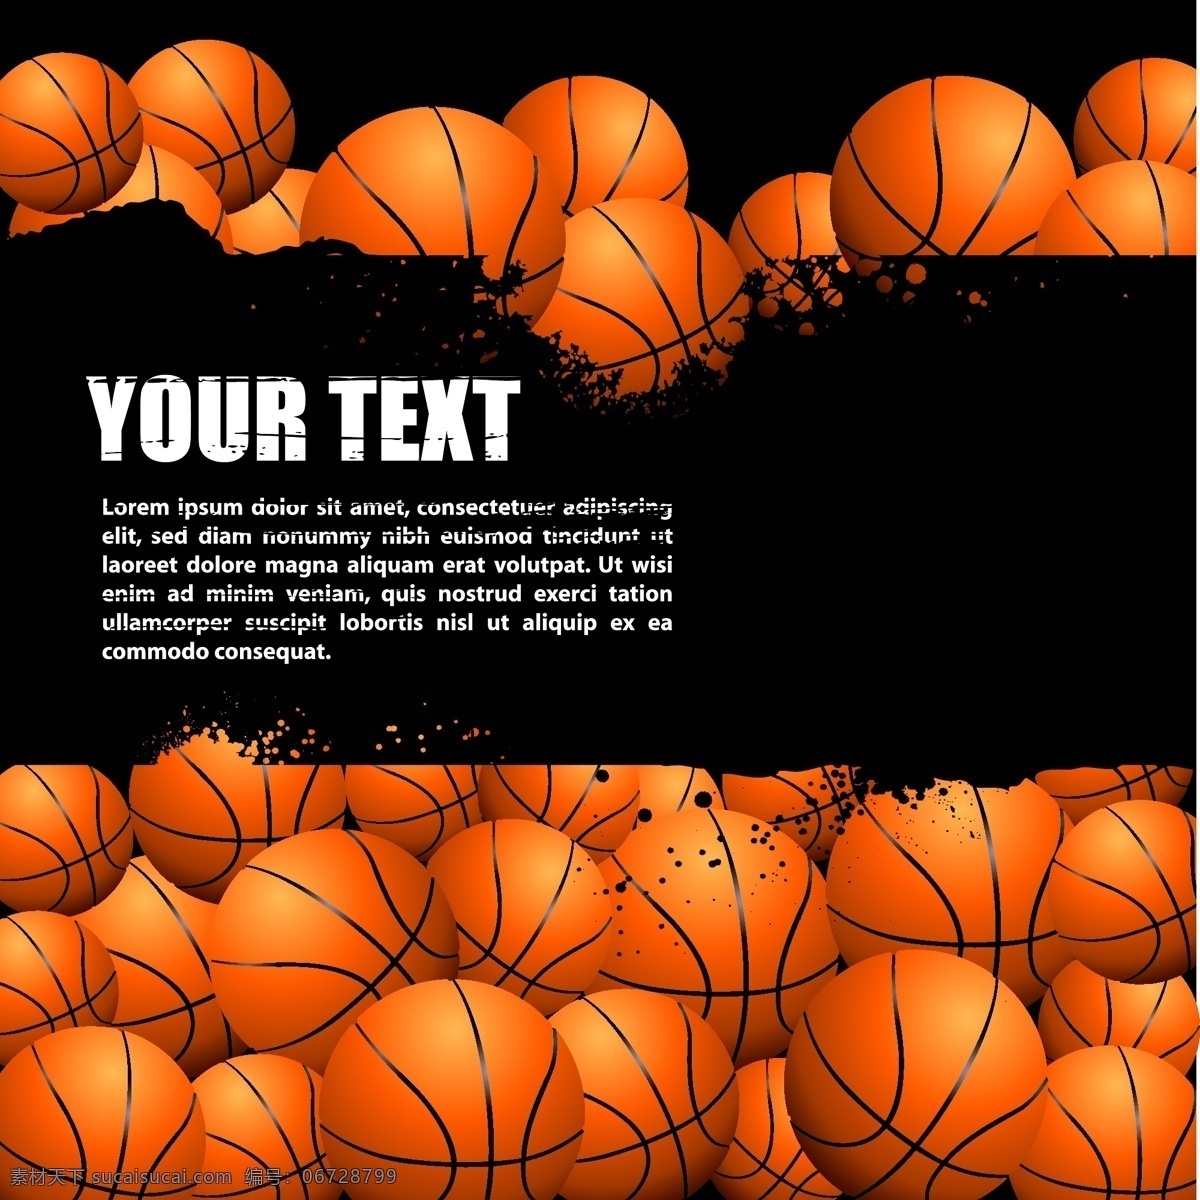 矢量篮球 篮球运动 球类 球 篮球比赛海报 篮球海报 篮球宣传 运动海报 室内运动 奥运会 运动健身 体育运动 篮球馆 篮球场 篮球图表 篮球标志 卡通篮球 篮球服 卡通设计